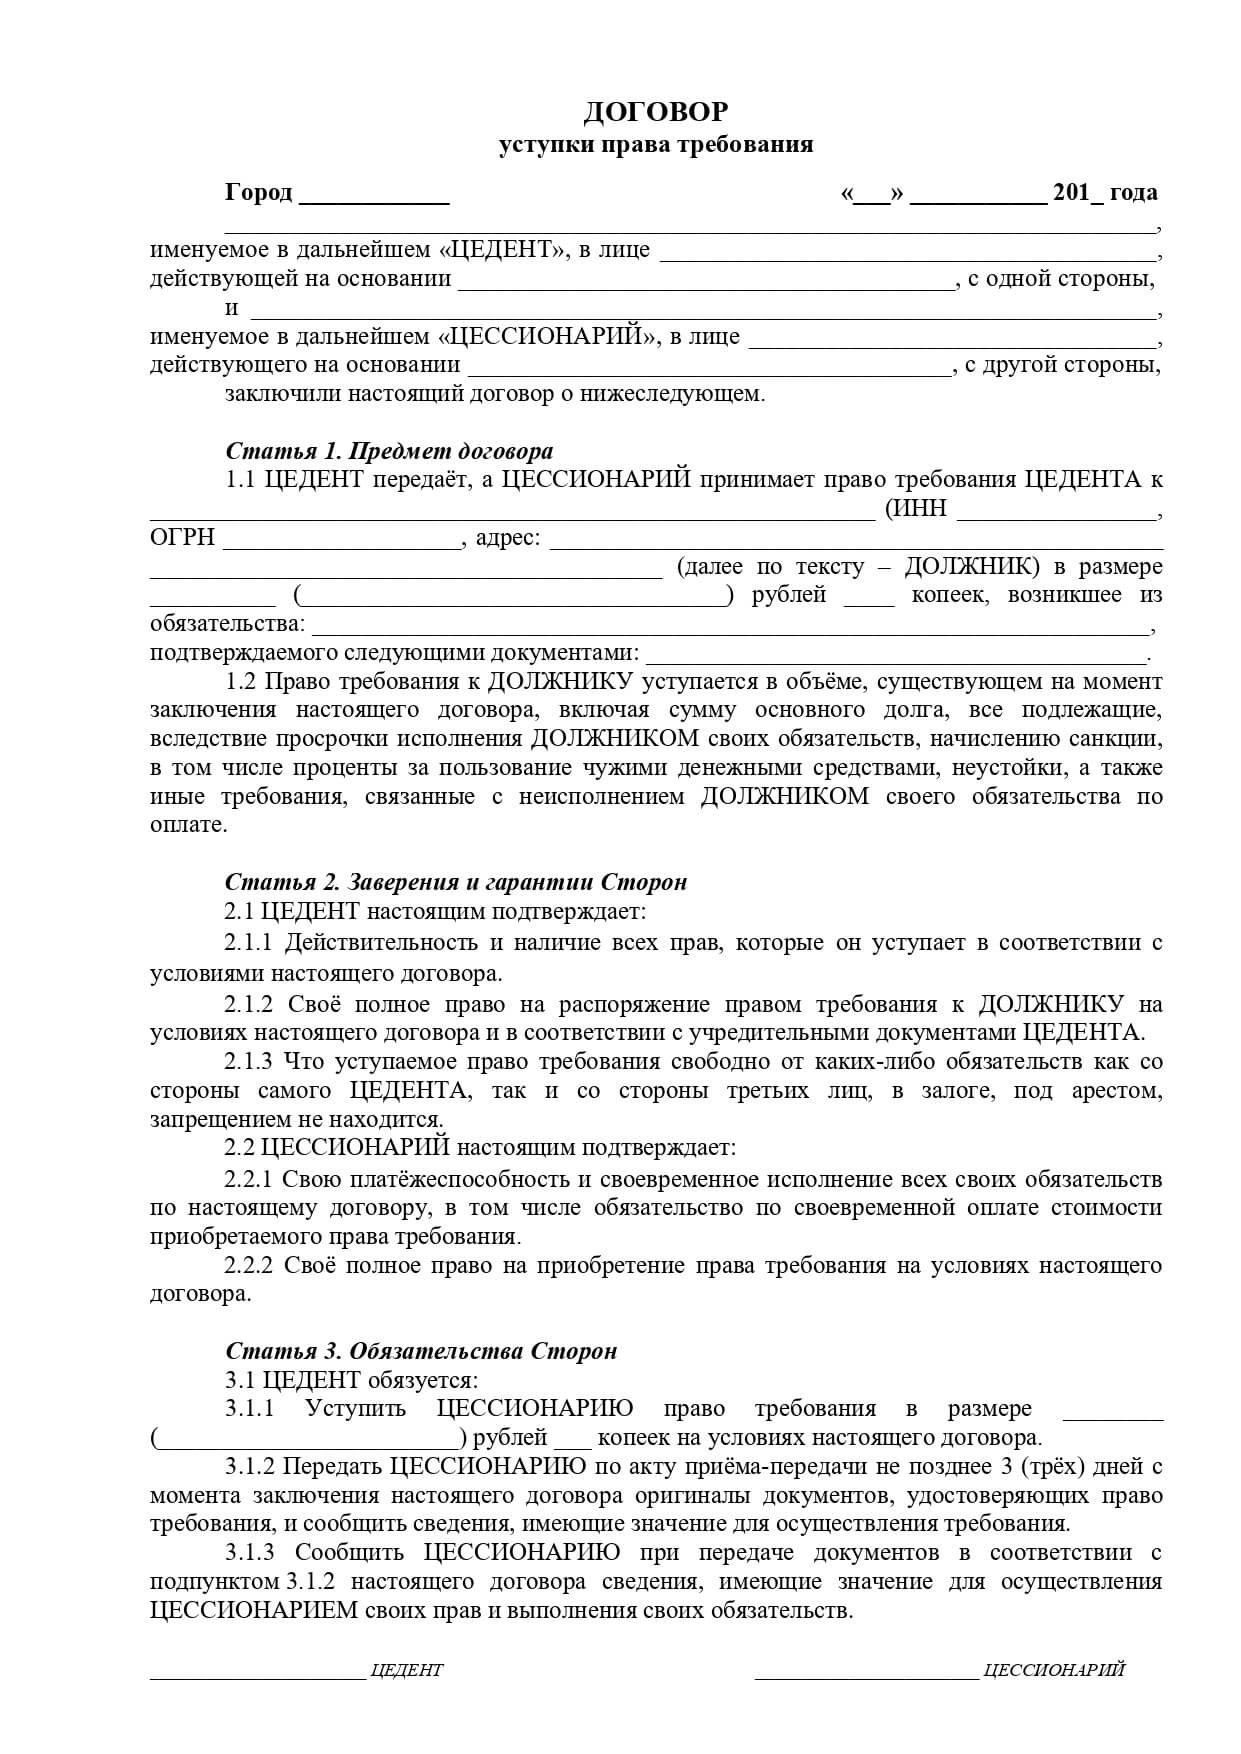 Договор цессии (уступки прав) - образец 2022 года. договор-образец.ру